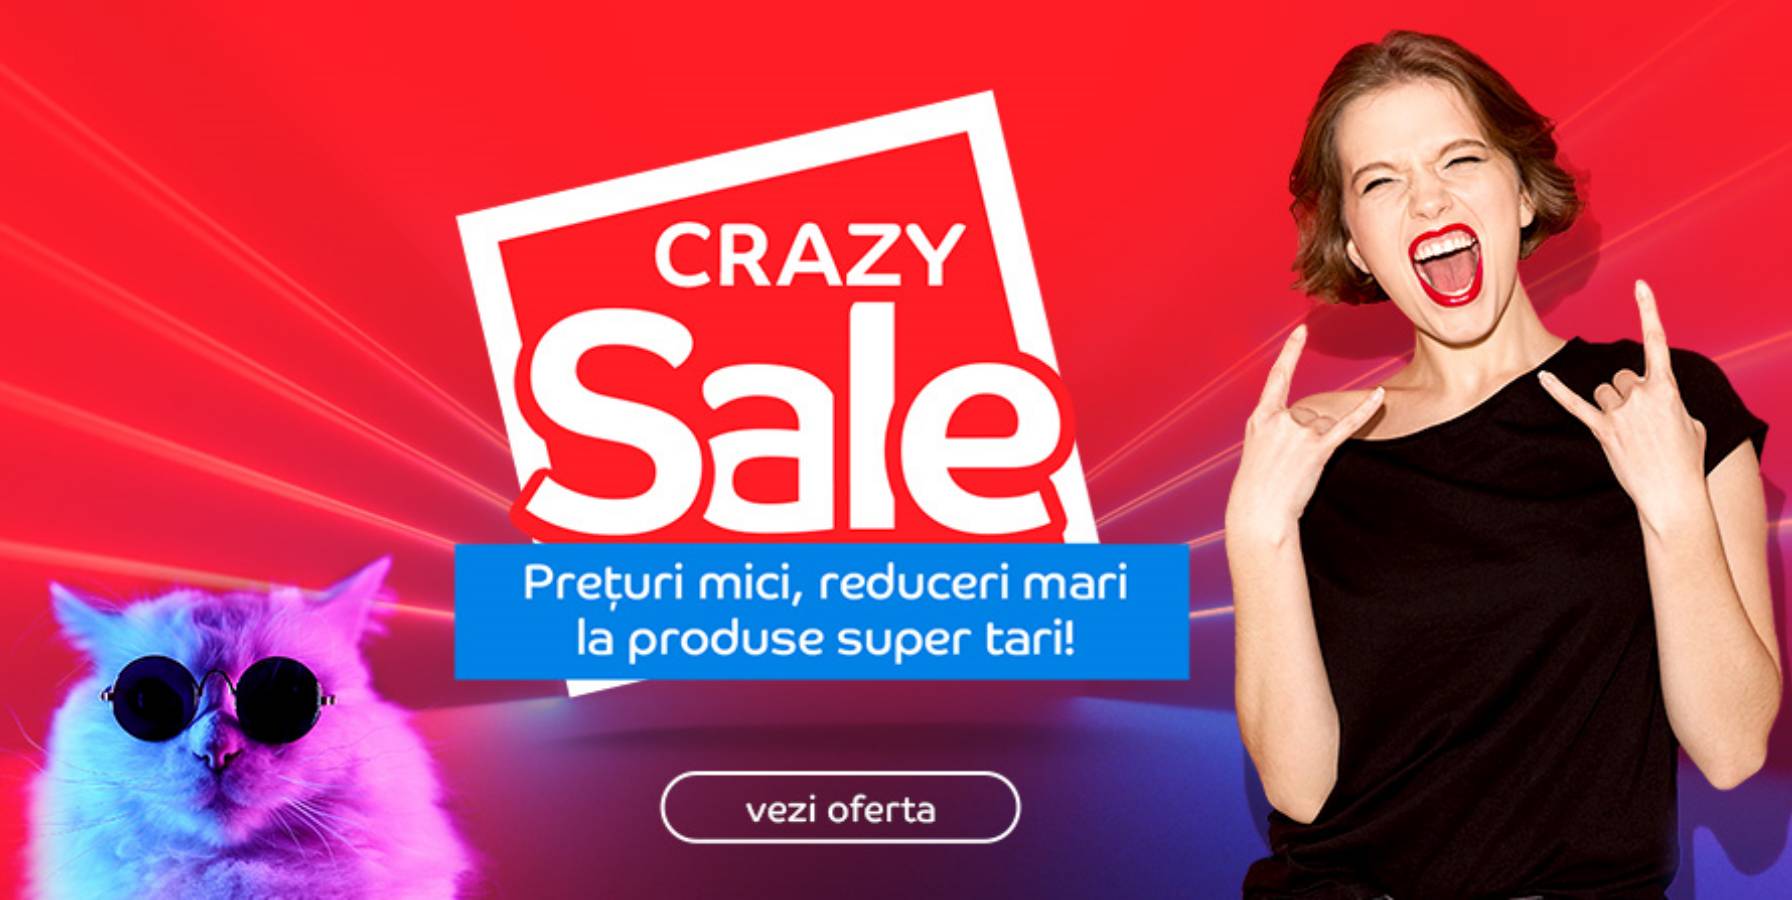 eMAG discounts Crazy SALE